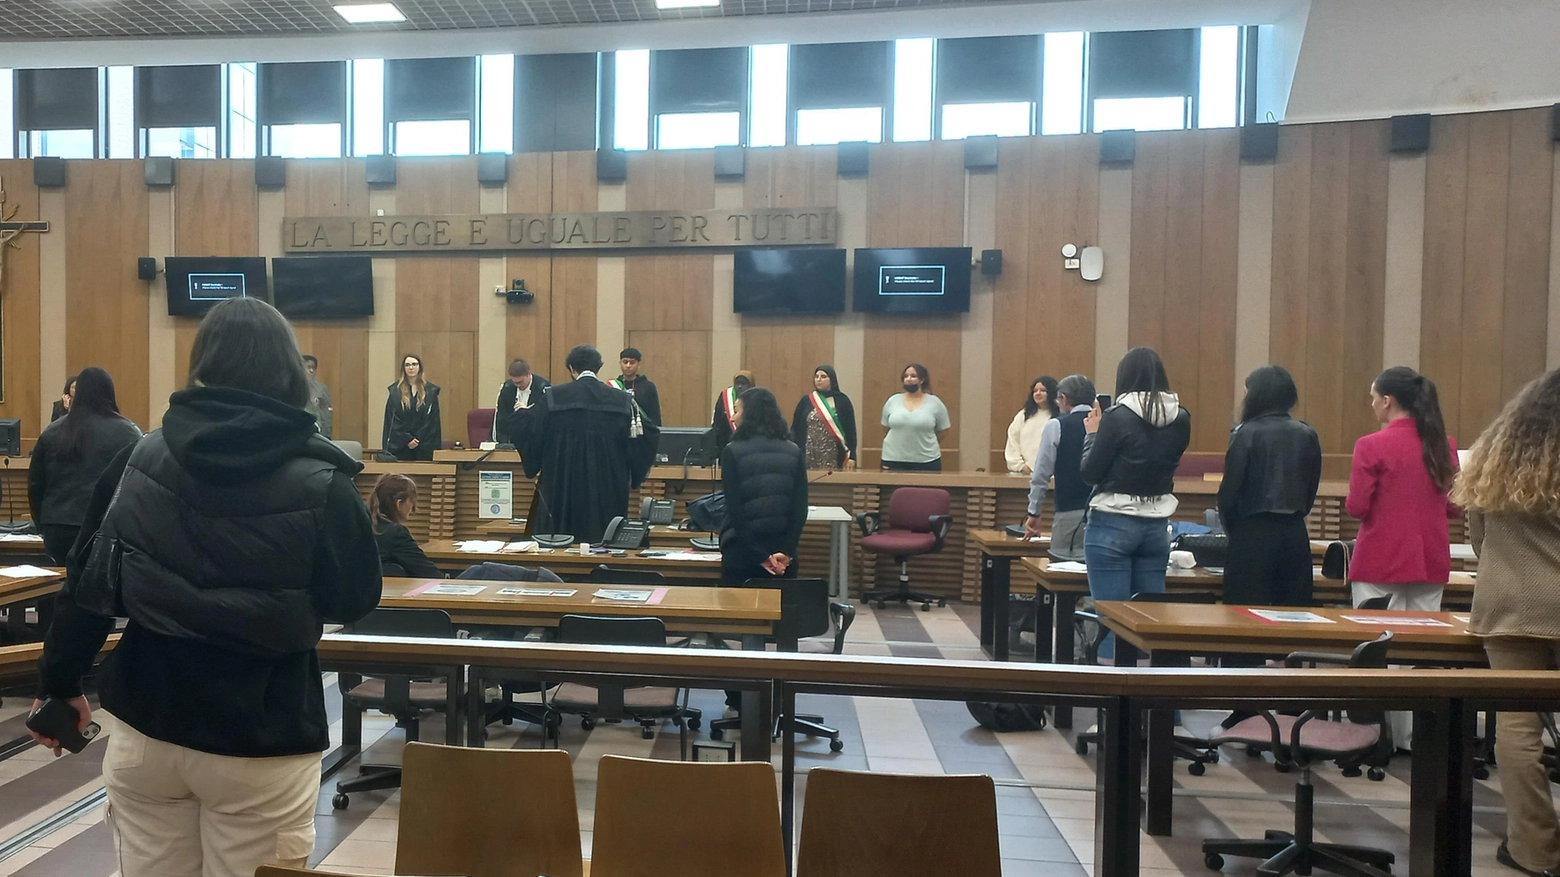 A lezione di giustizia in tribunale  Dalle indagini dopo un crimine   al funzionamento di un processo  Studenti in veste di Ris e giudici